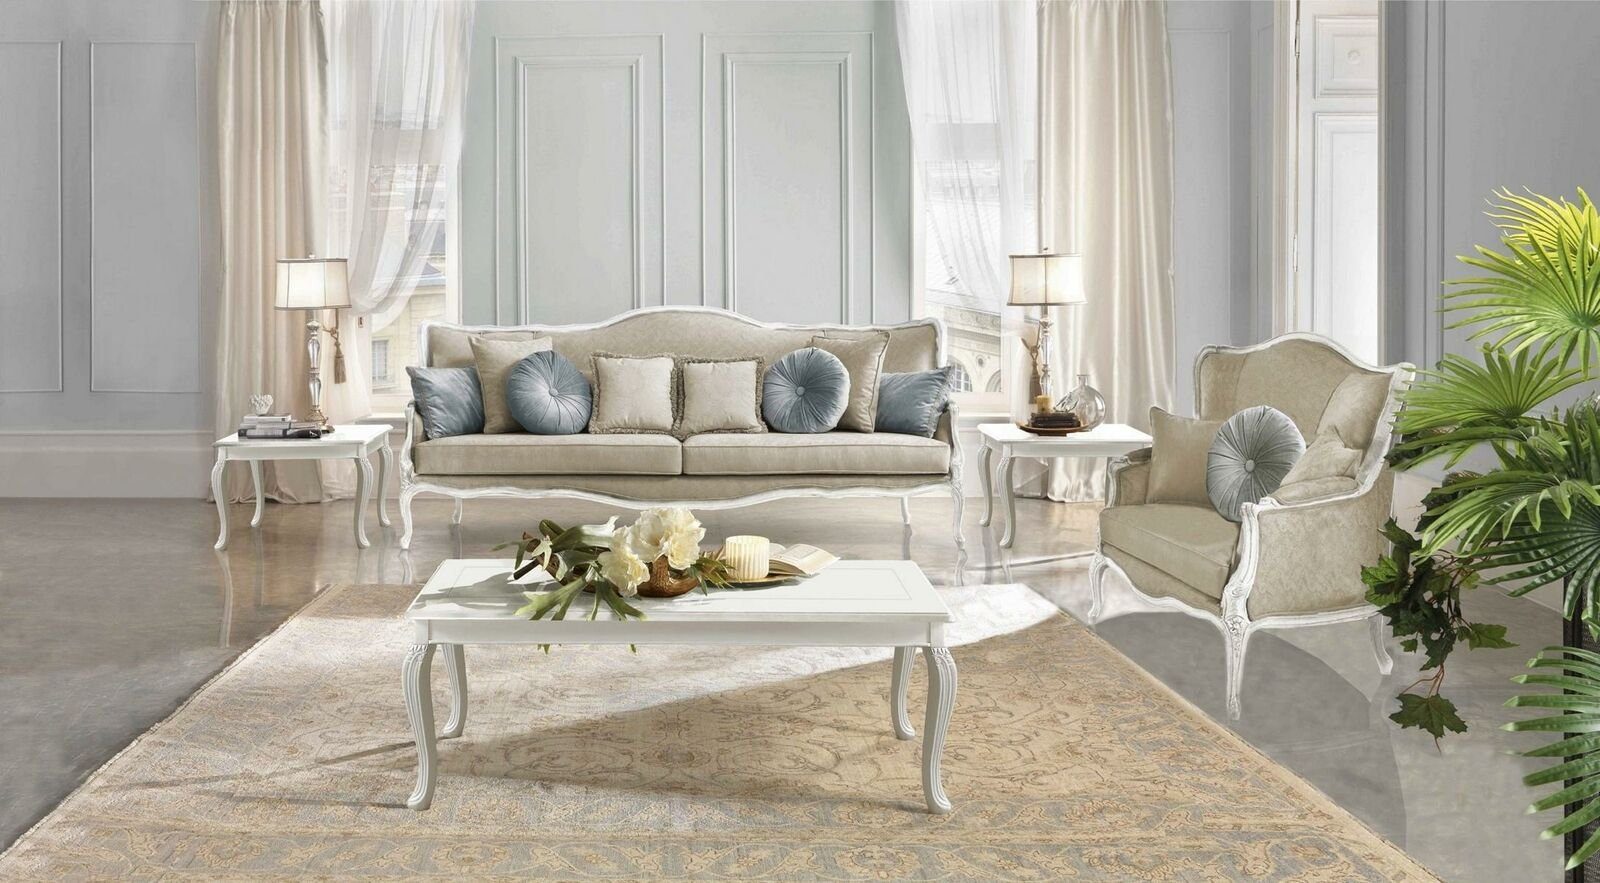 JVmoebel Sofa Italienische Möbel 3 Sitzer Klassische Barock Rokoko Sofa Textil Stoff, Made in Europe